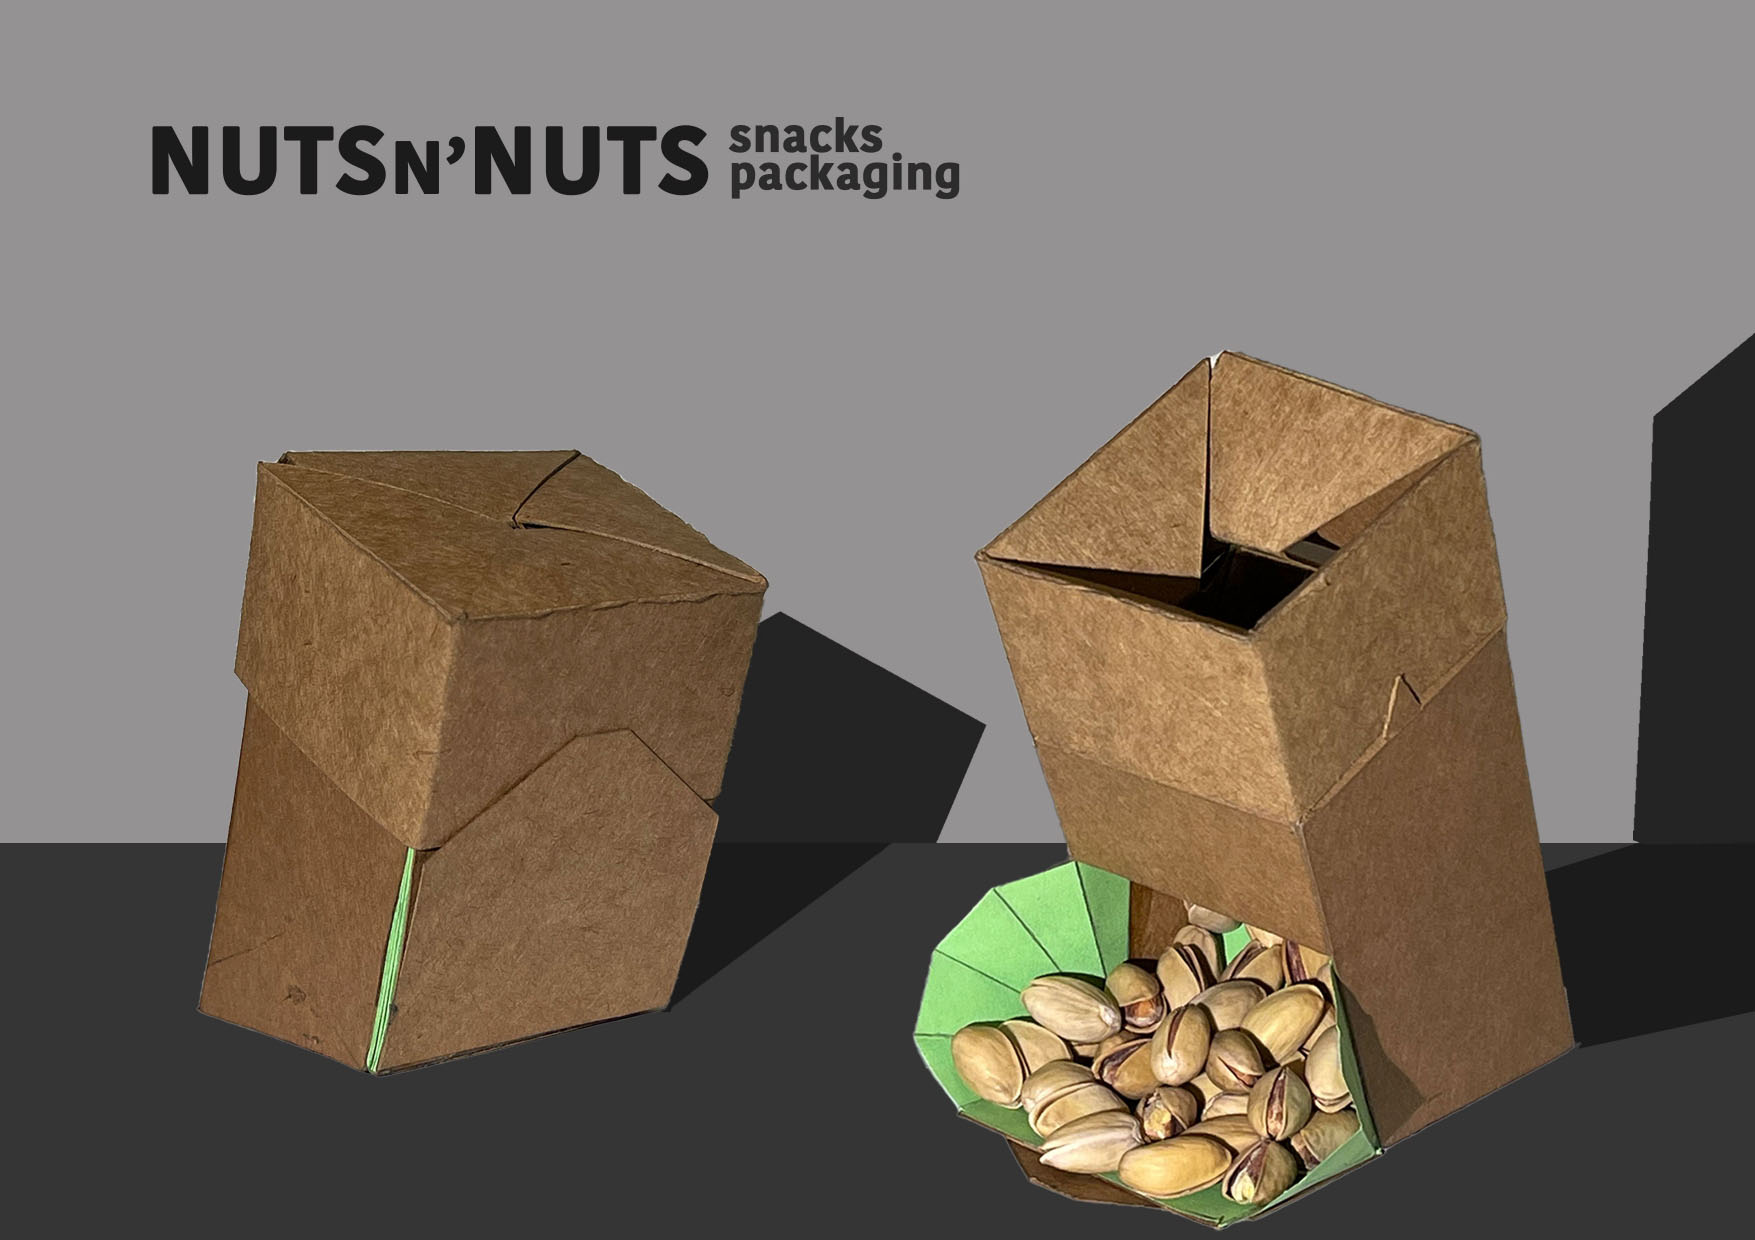 NUTS n' NUTS snacks packaging